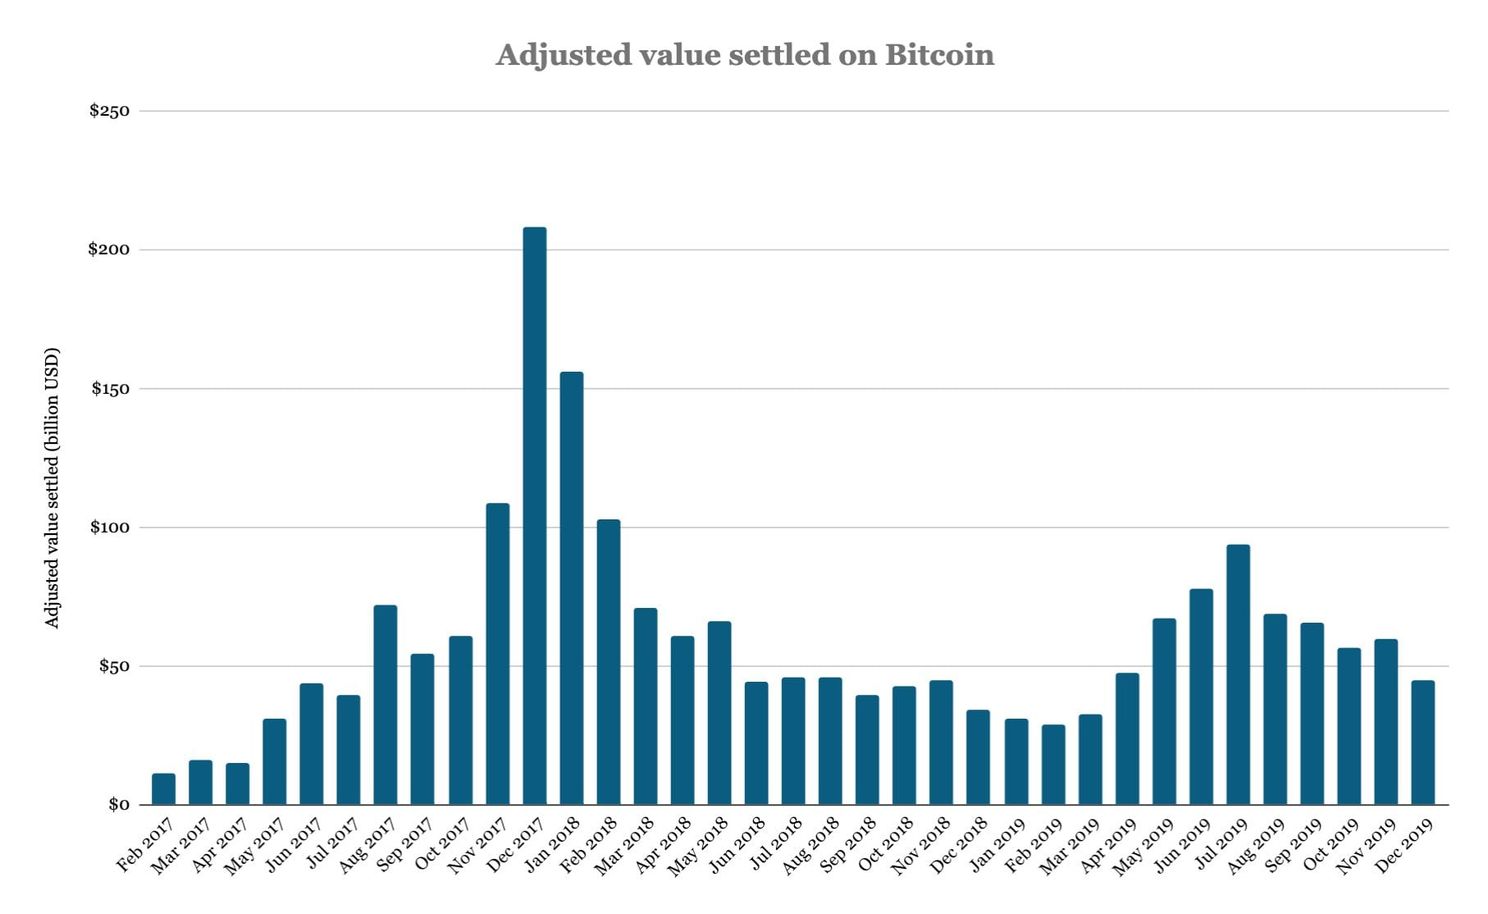 Bitcoin transactievolume piekte in juni 2019 met $93 miljard in één maand